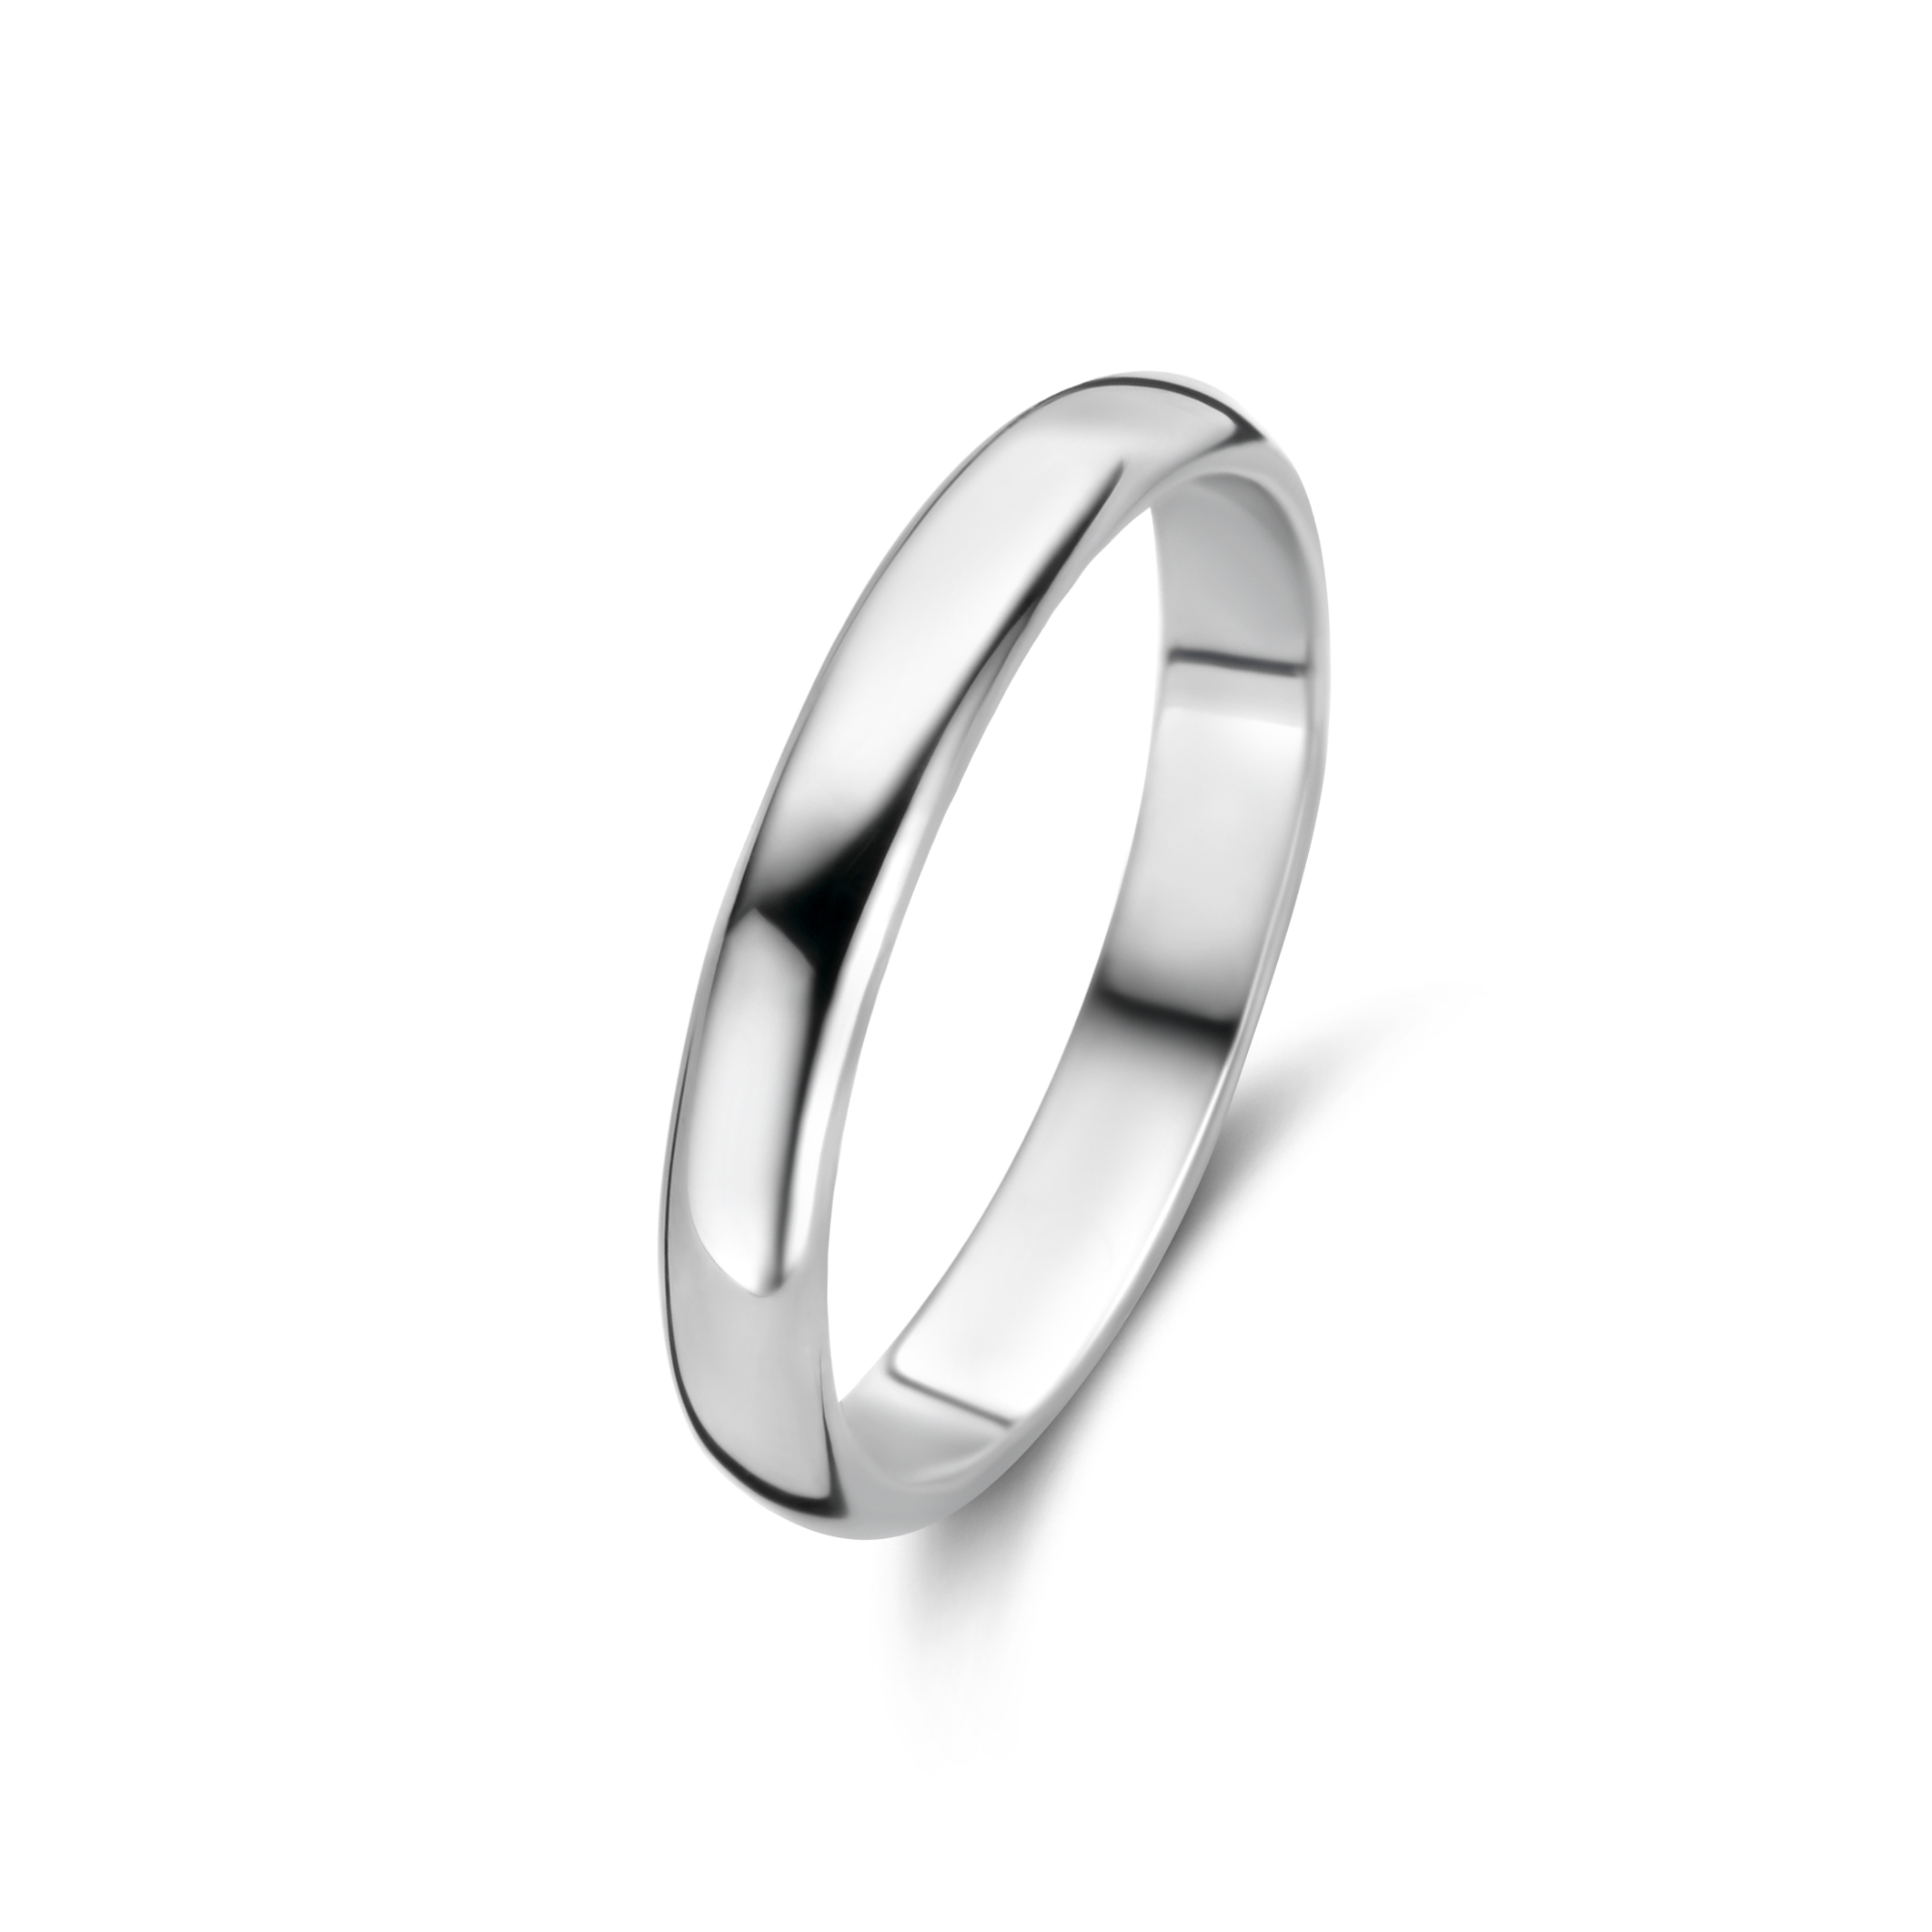 Sterling Zilveren solide ring met een dikte van 3mm